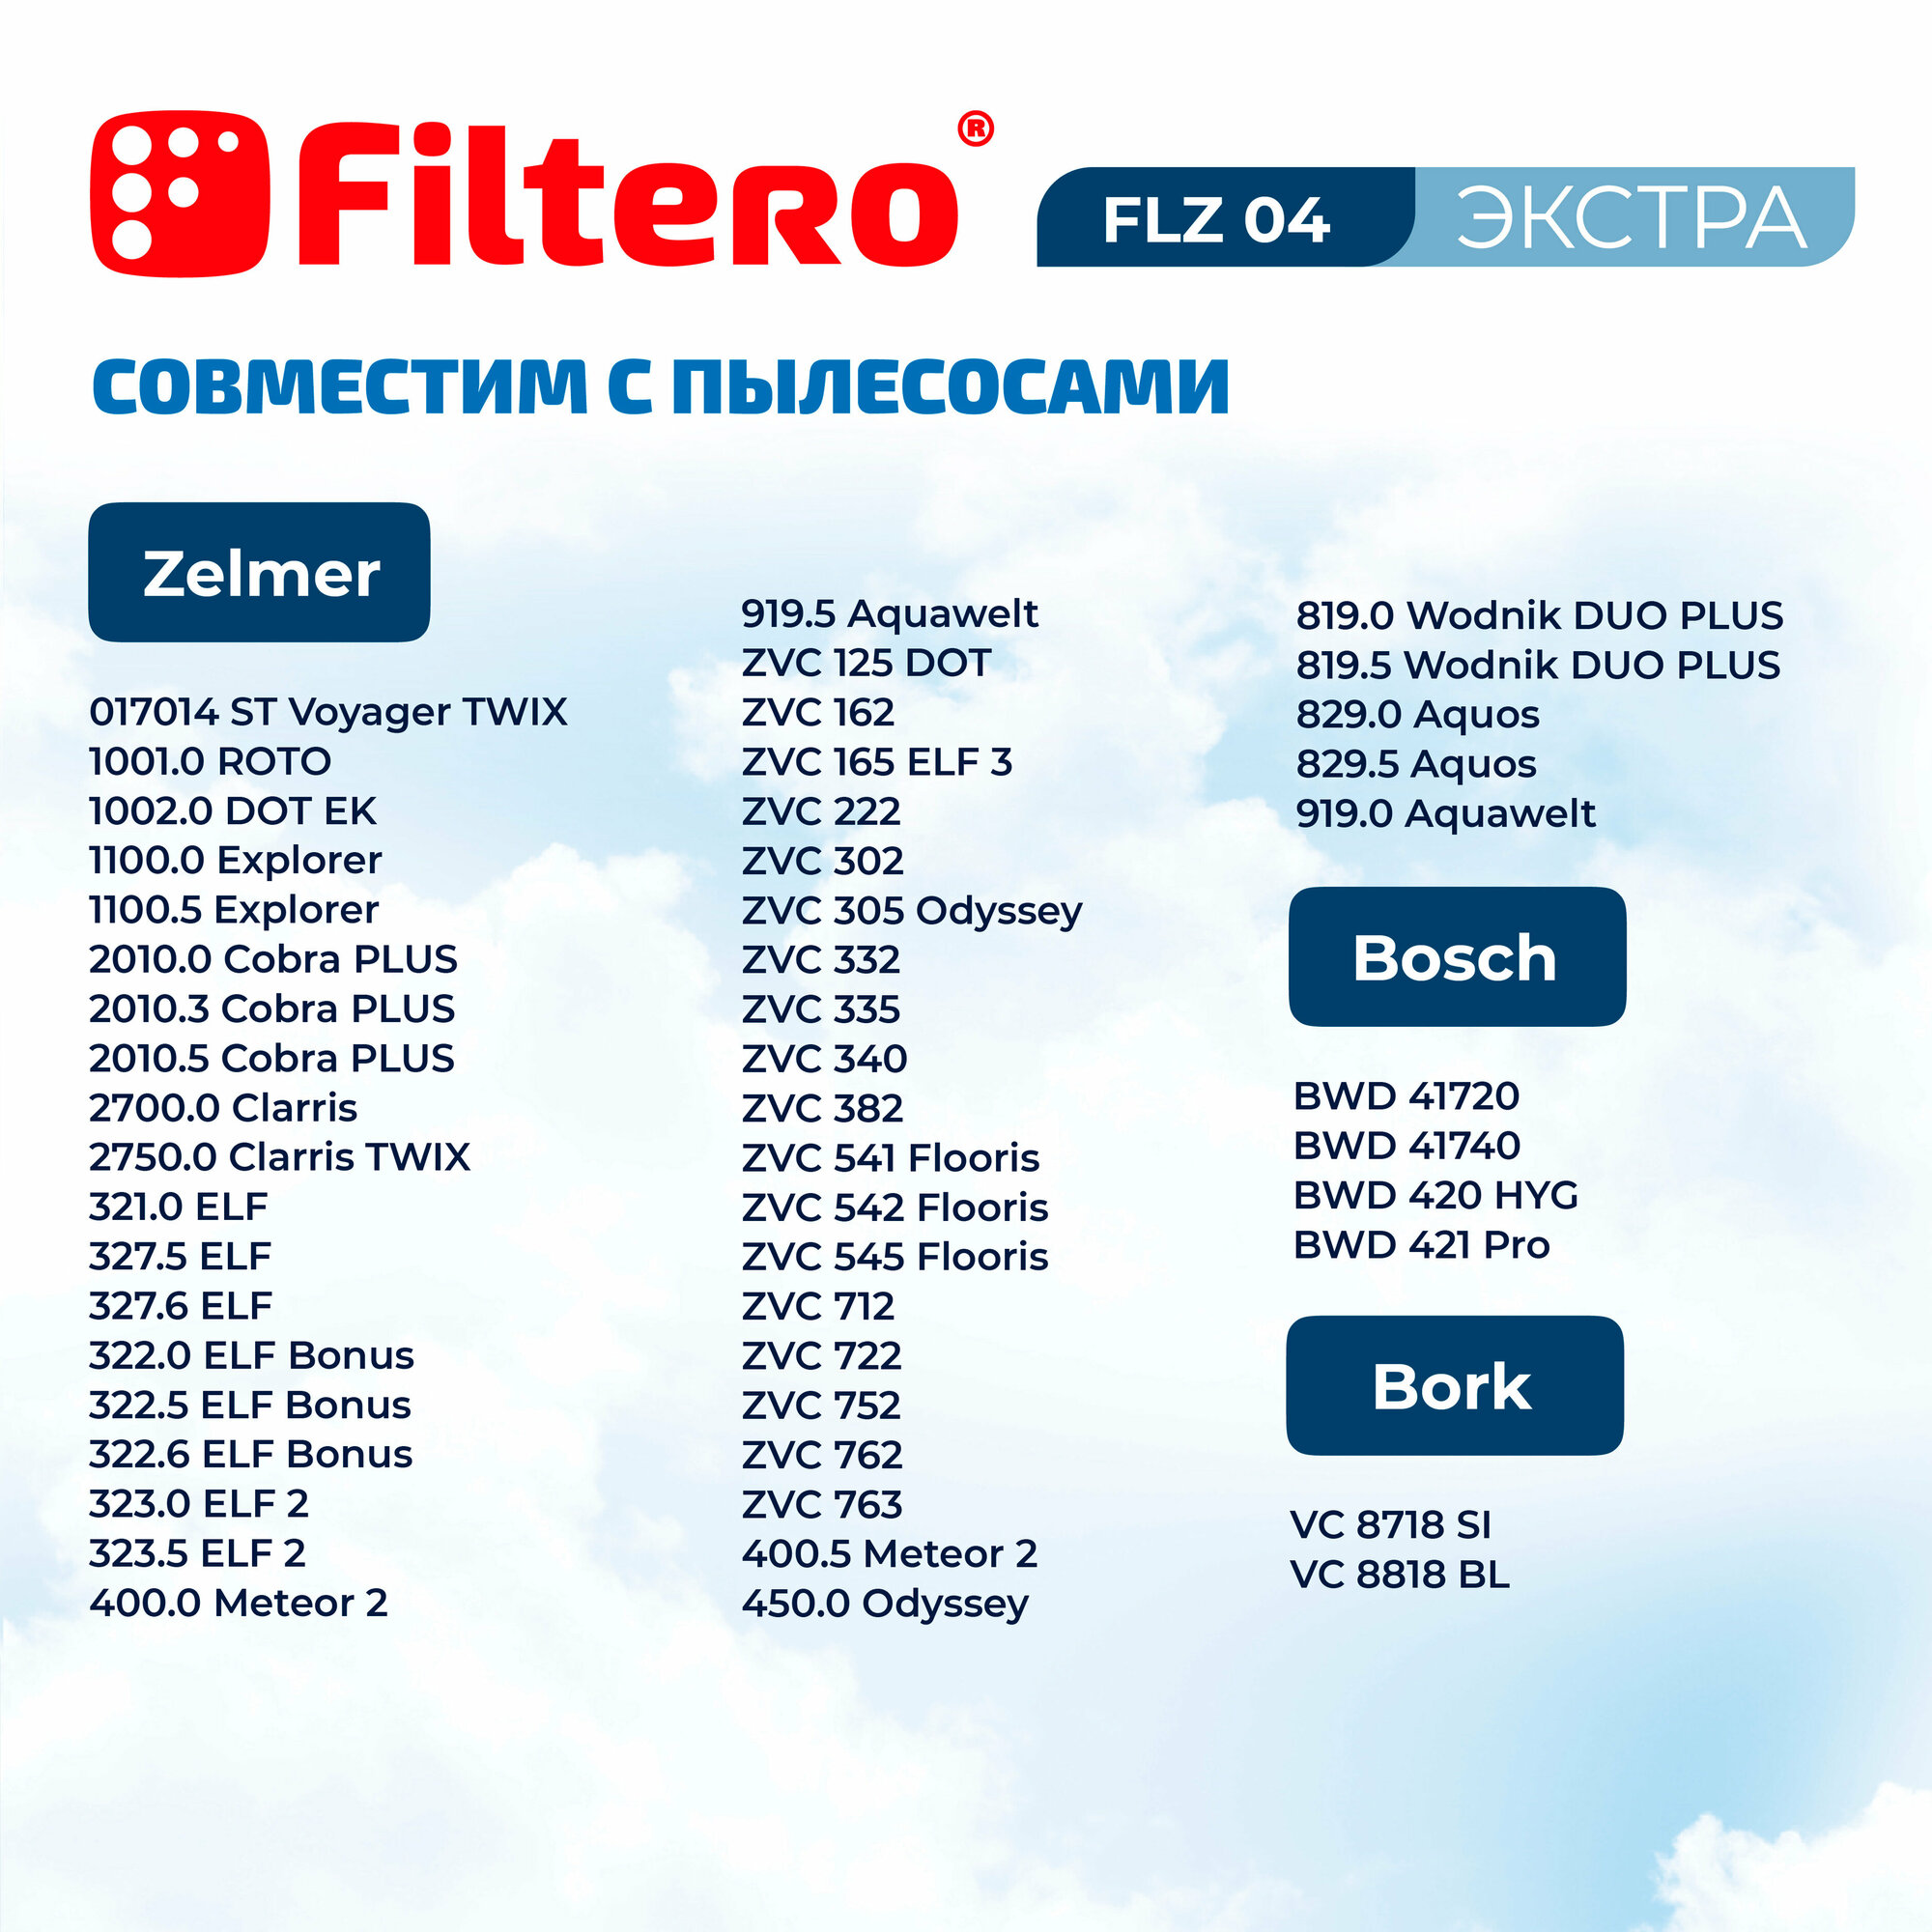 мешок-пылесборник Filtero FLZ 04 Экстра - фото №4